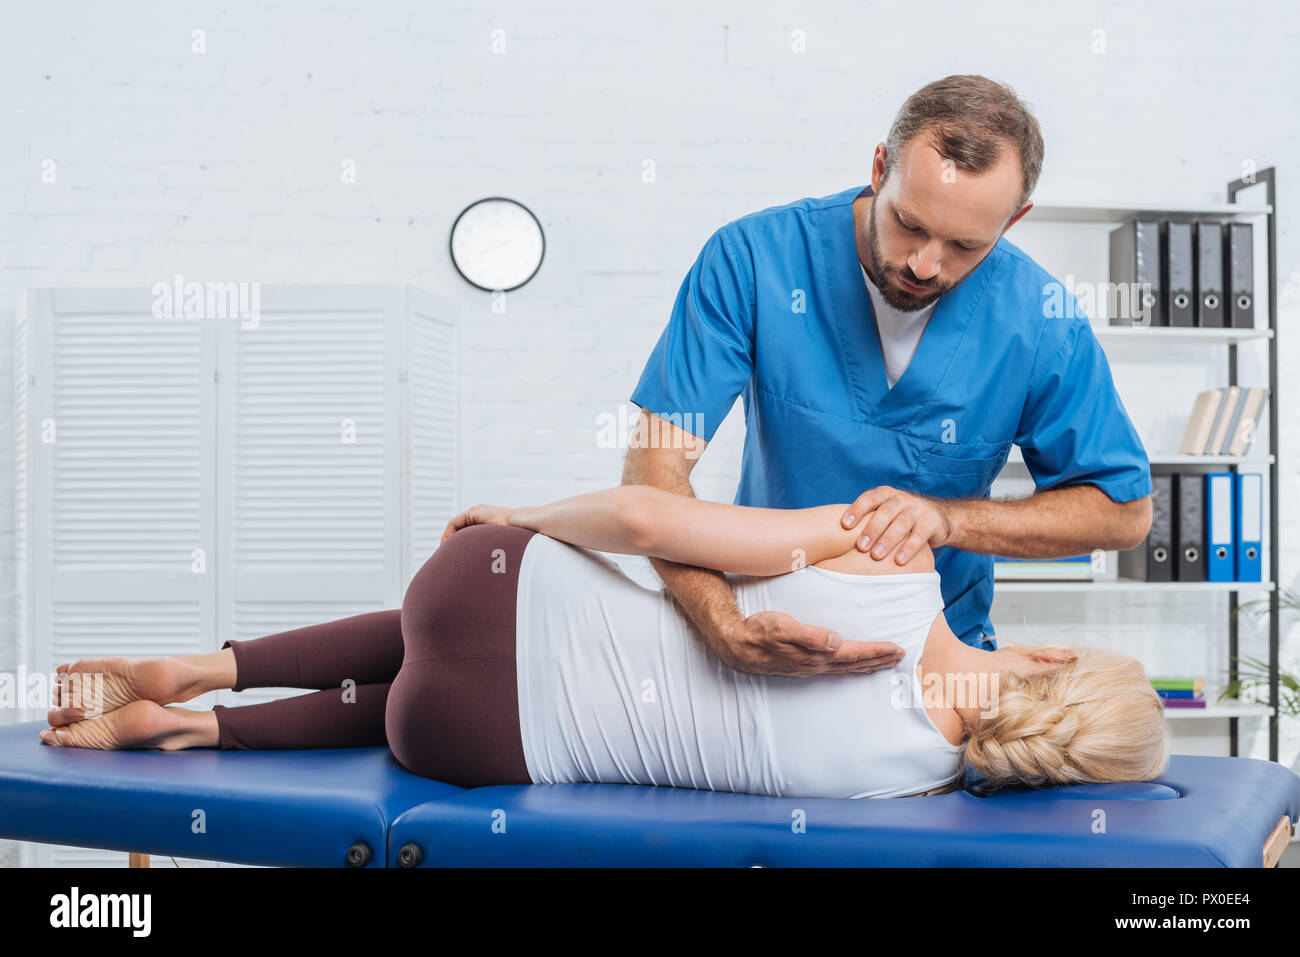 Massaggio chiropratico di schiena del paziente sdraiato sul lettino da massaggio in ospedale Foto Stock